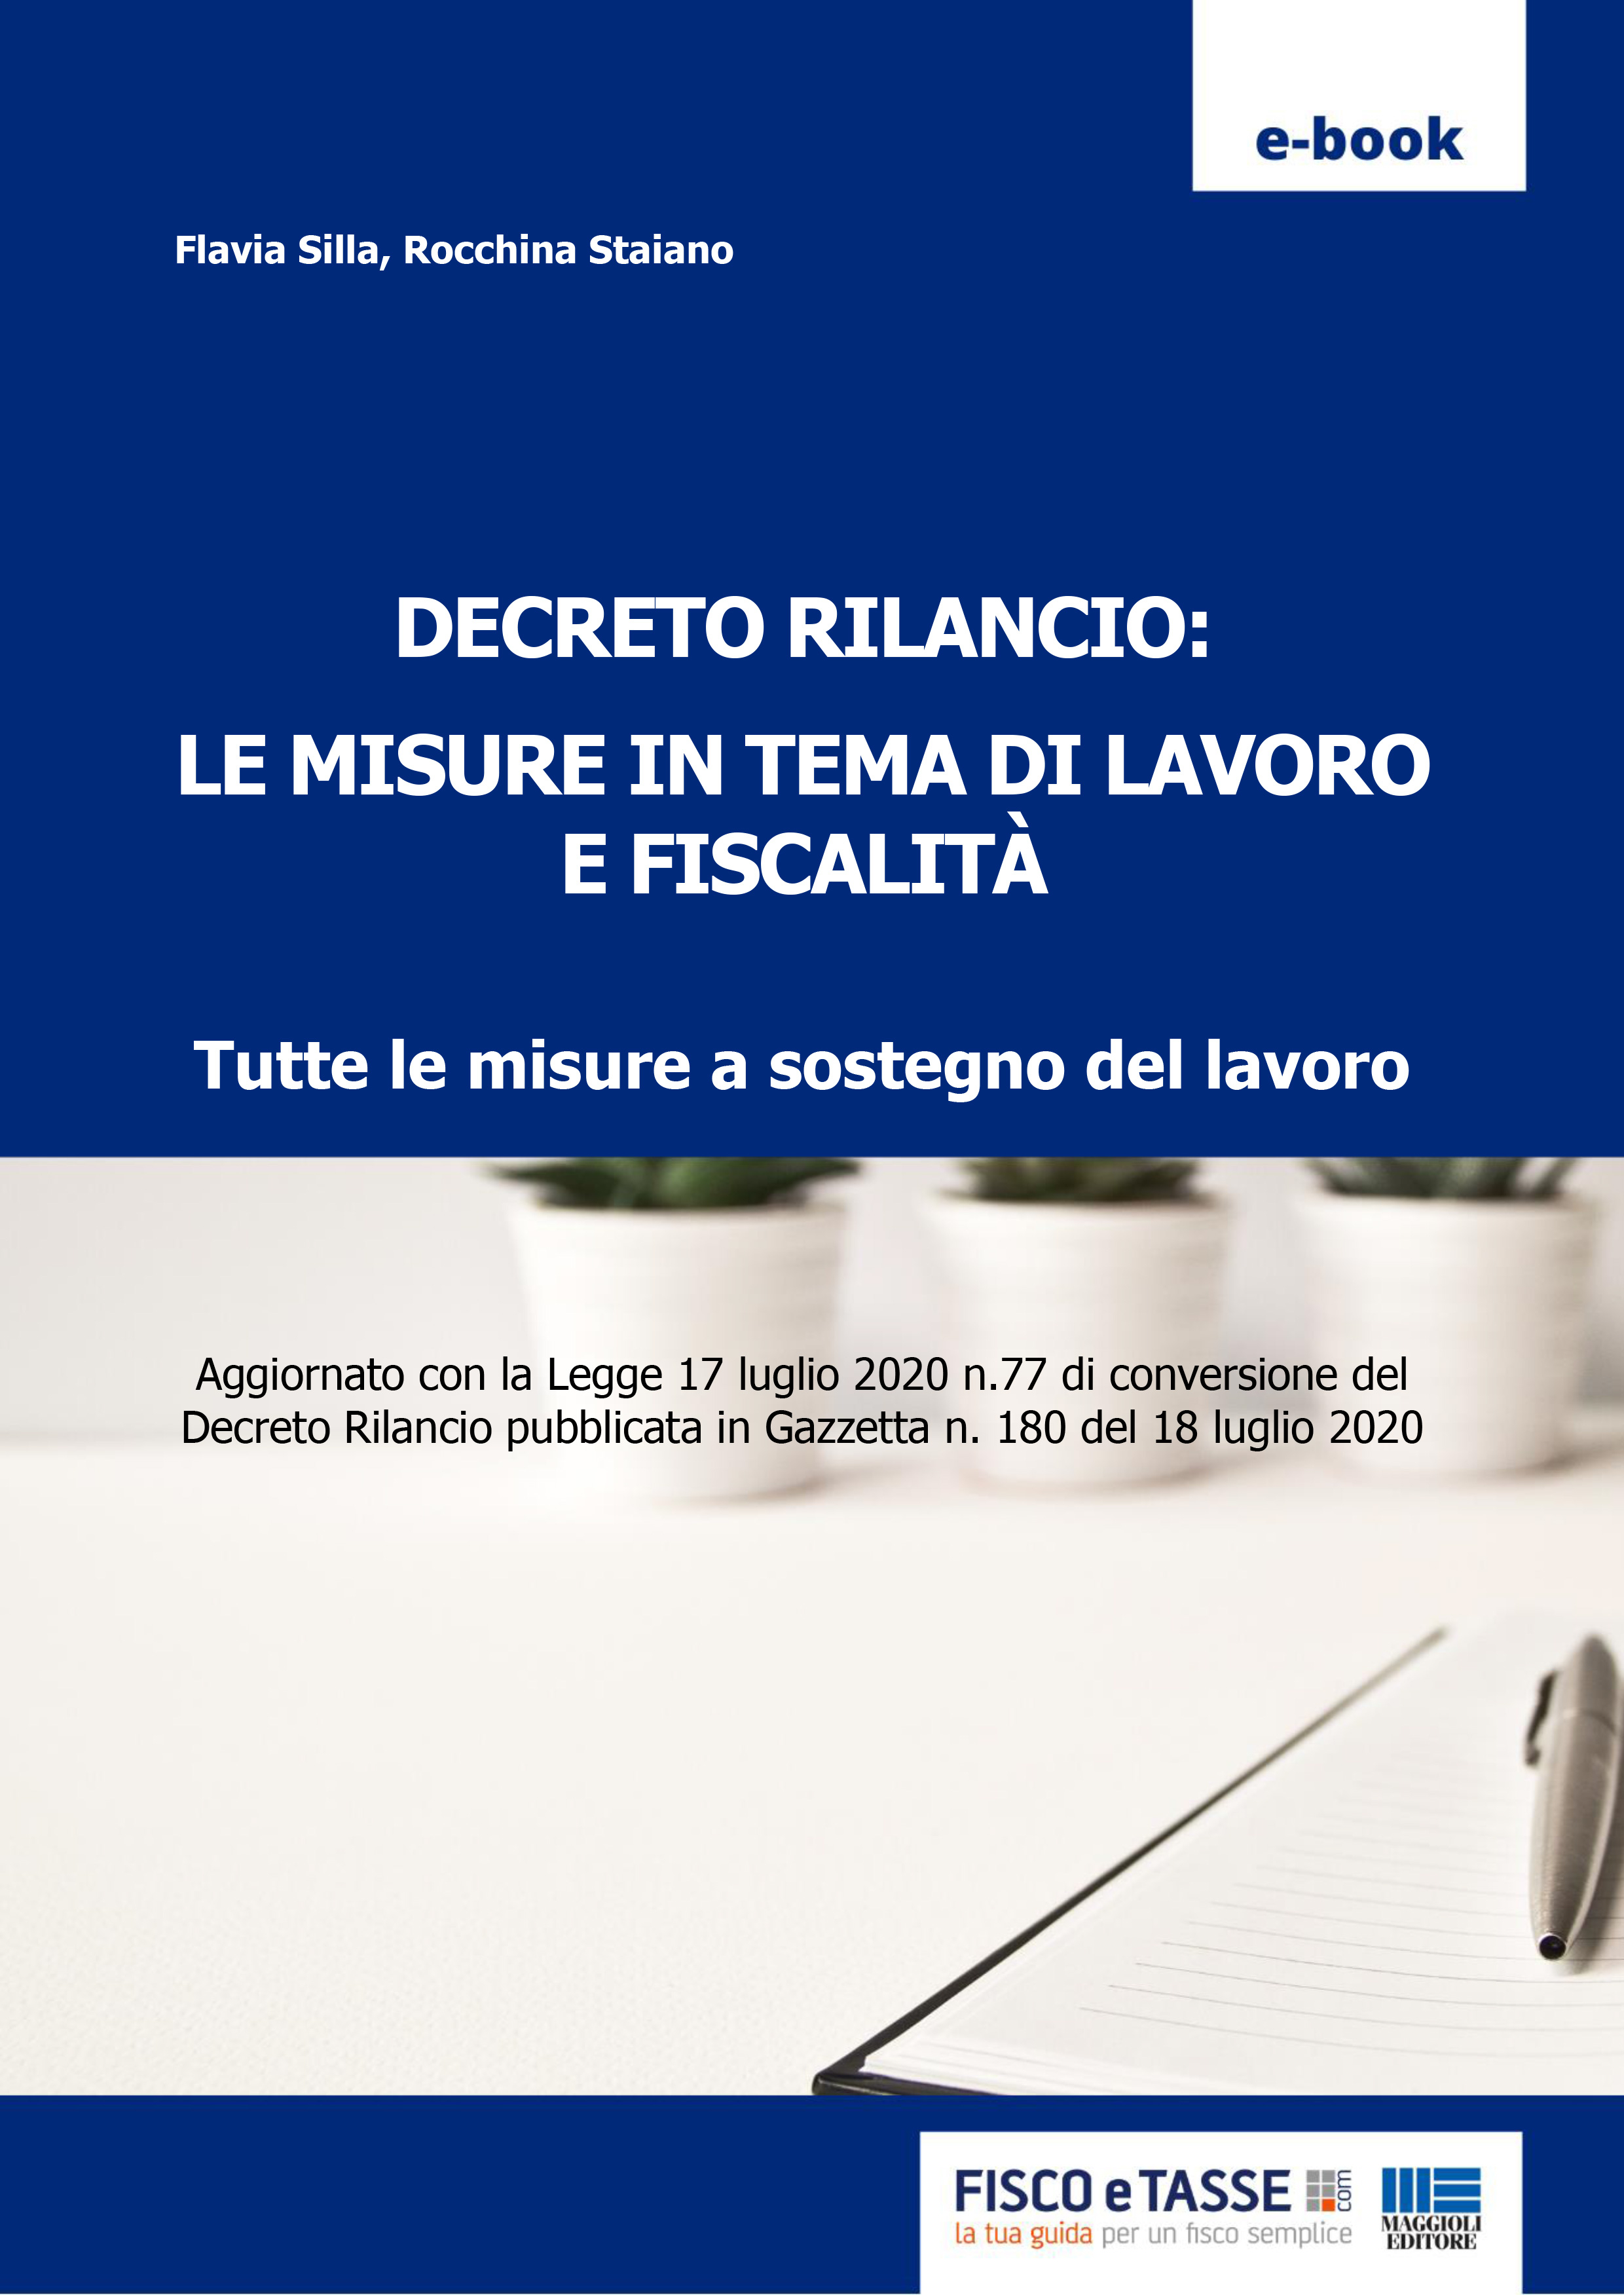 DECRETO RILANCIO: LE MISURE IN TEMA DI LAVORO E FISCALITA' - eBook